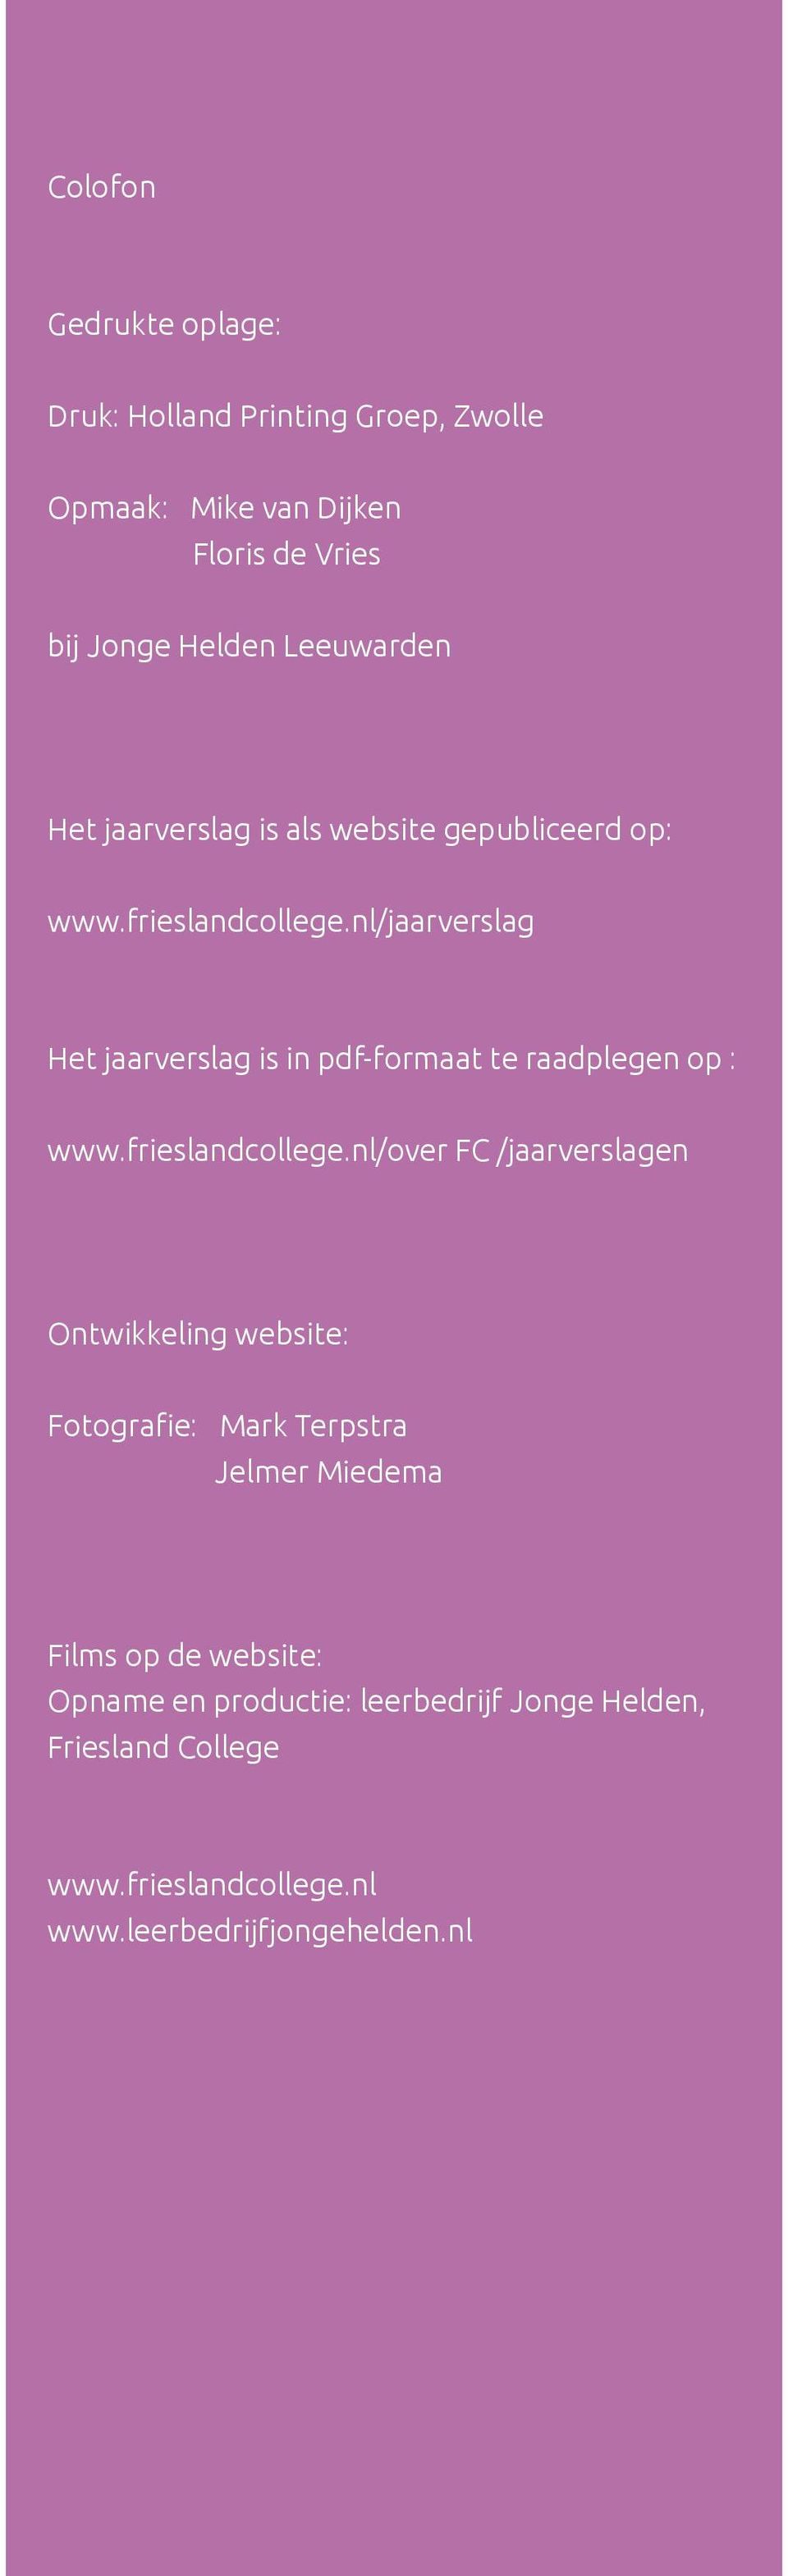 nl/jaarverslag Het jaarverslag is in pdf-formaat te raadplegen op : www.frieslandcollege.